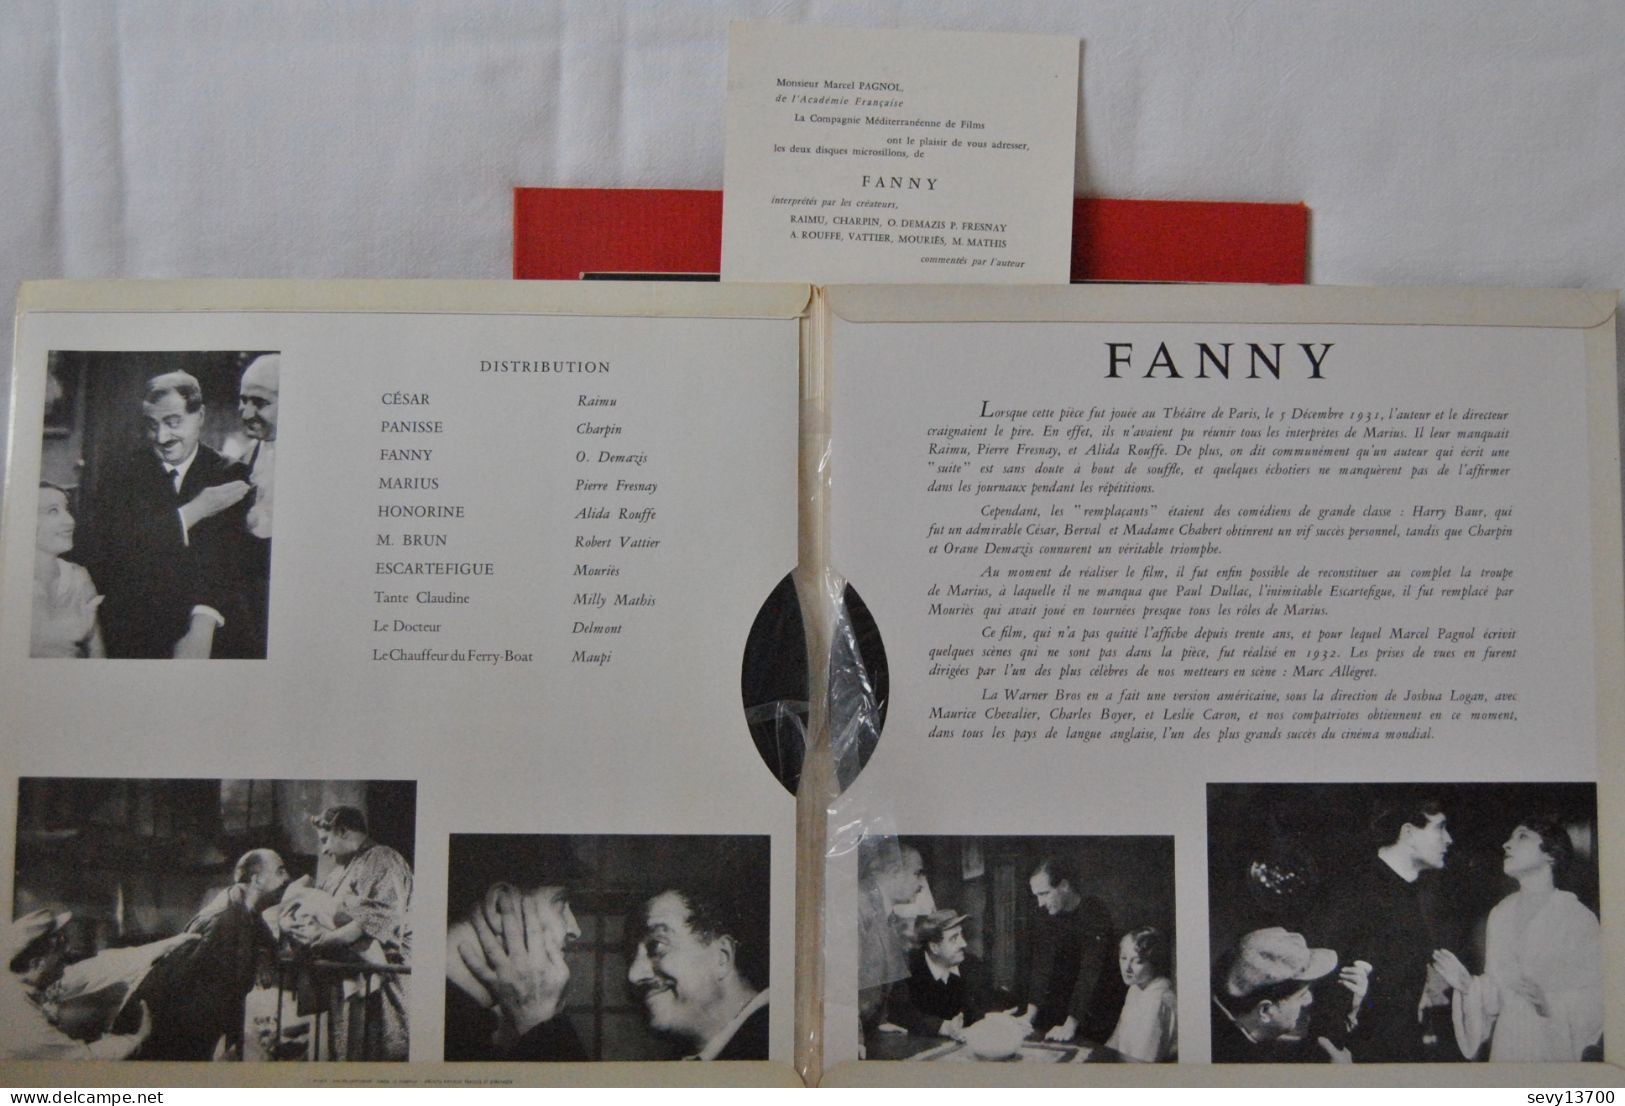 Raimu Dans Fanny De Marcel Pagnol Avec O. Demazis, Charpin, P. Fresnay - Cómica